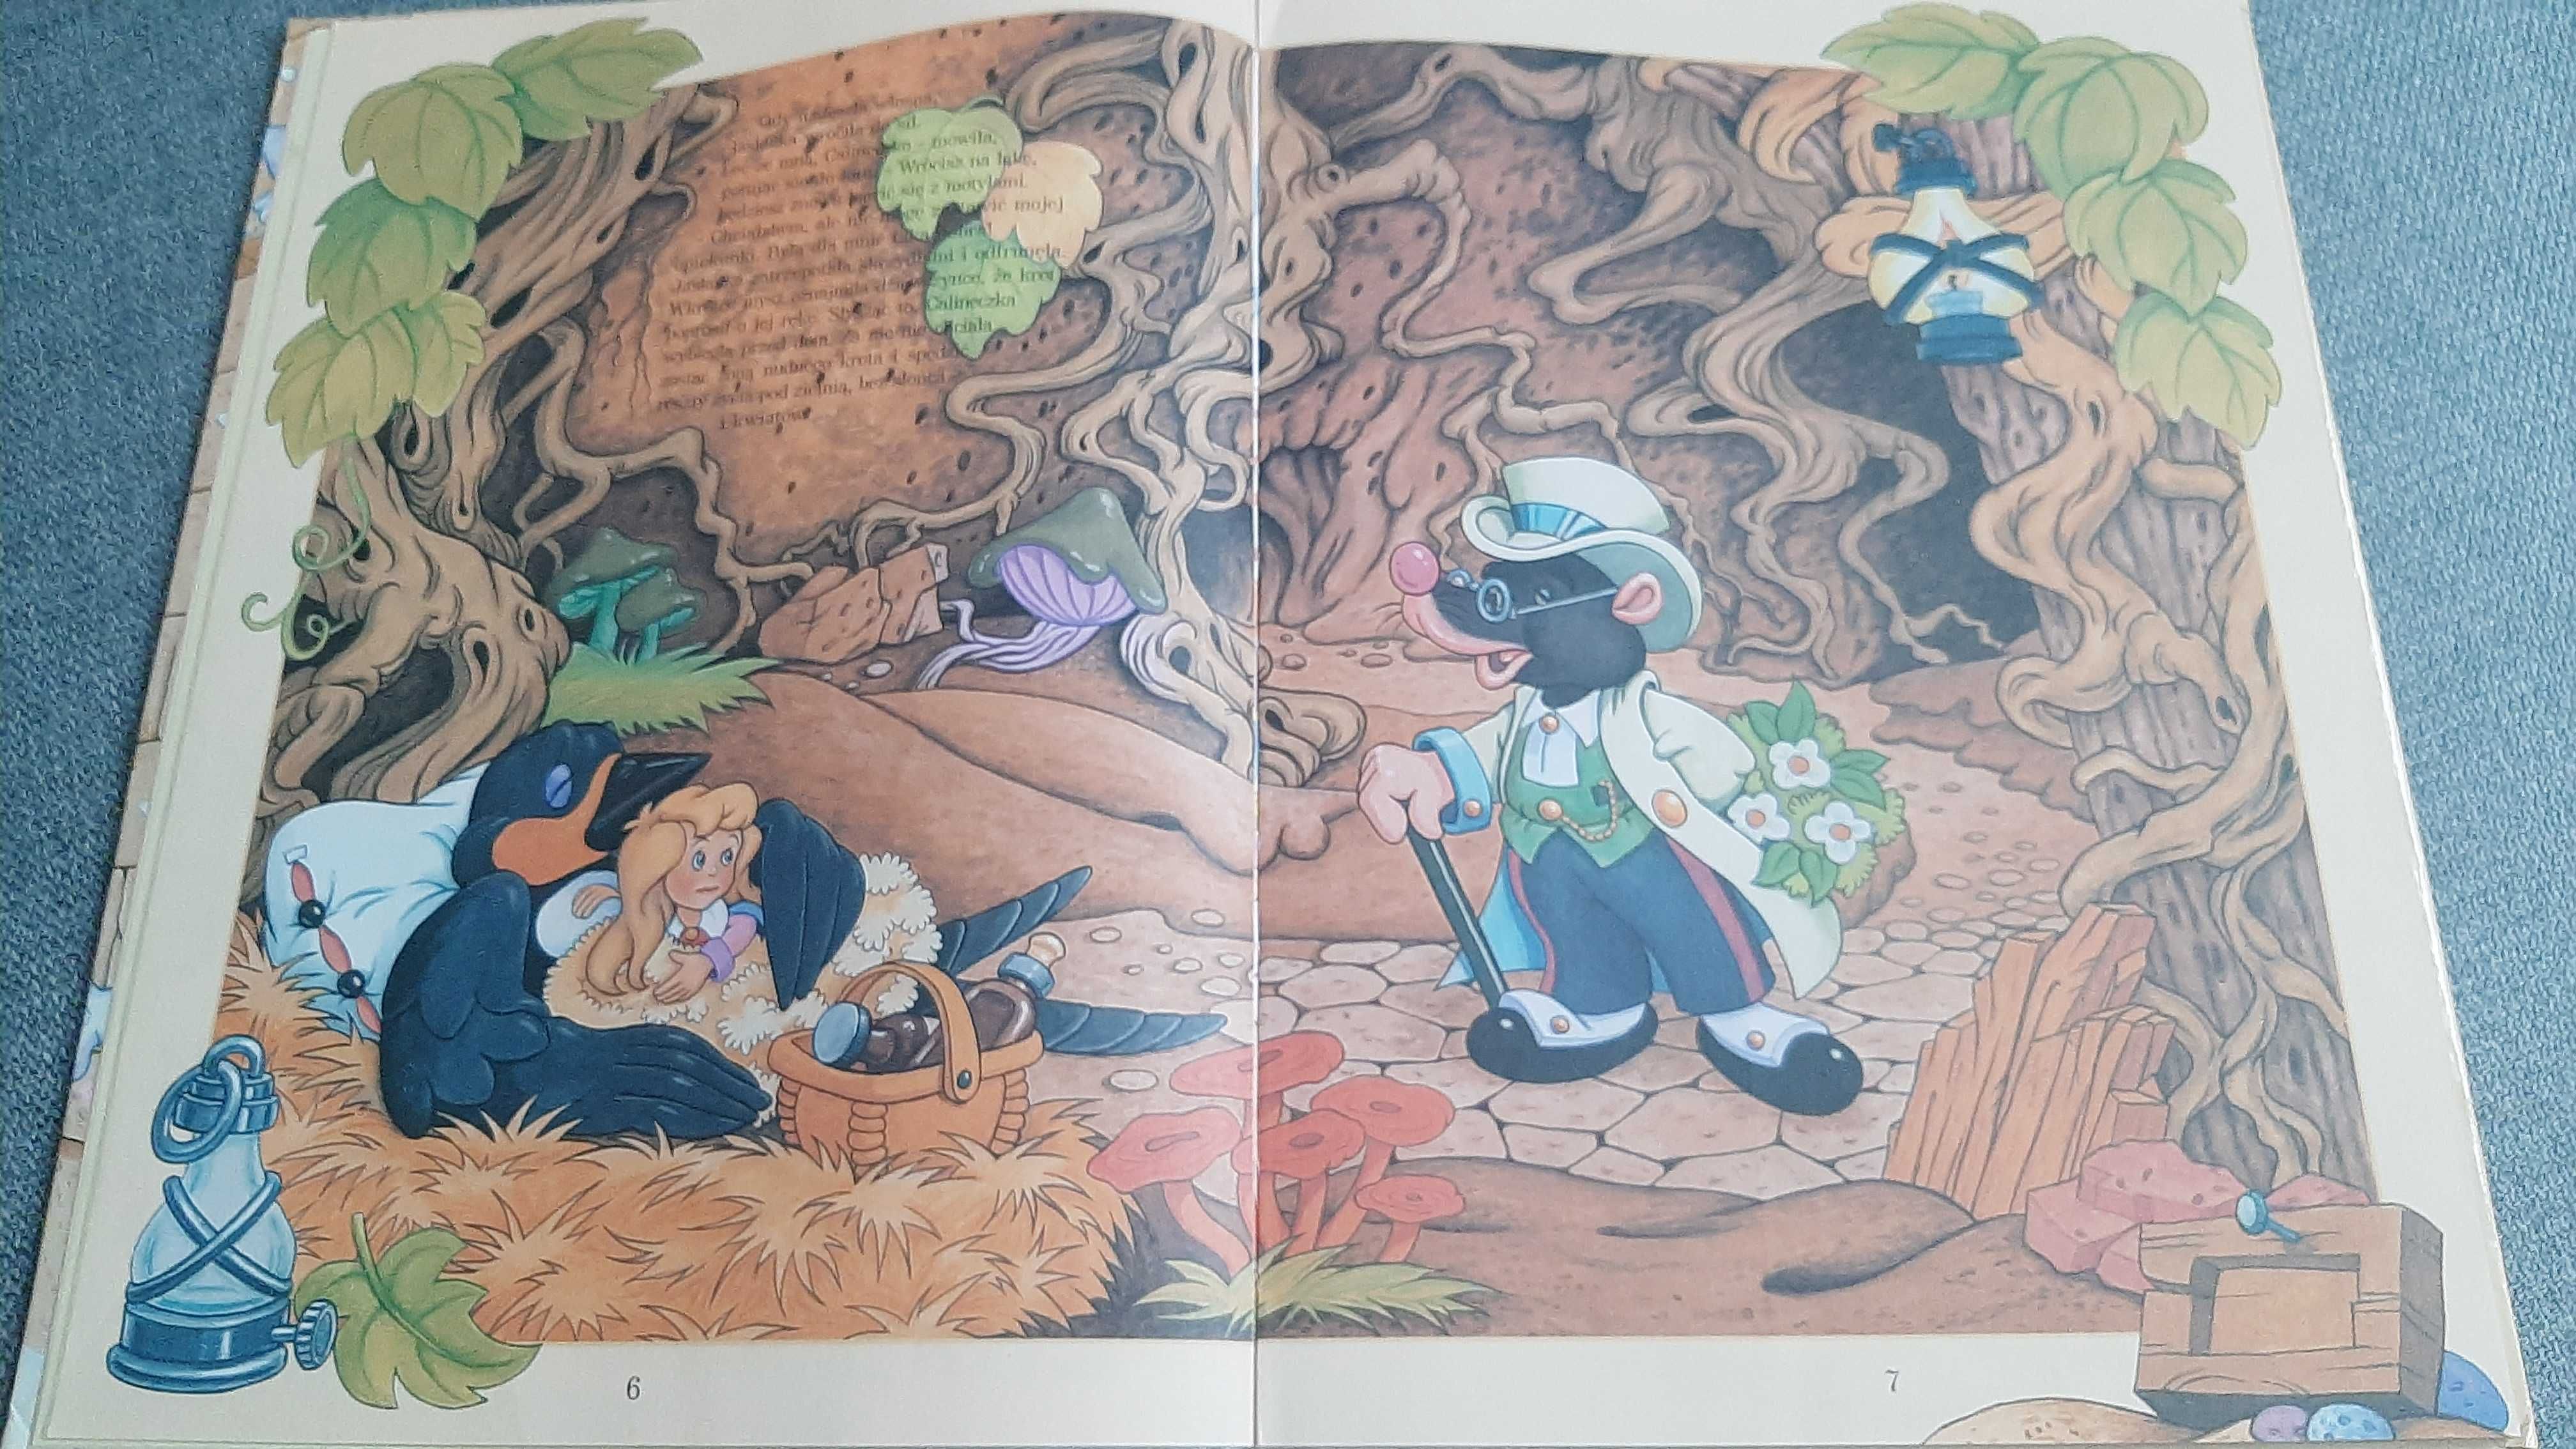 Hans Christian Andersen Baśnie zbiór 6baś Calineczka Brzydkie kaczątko